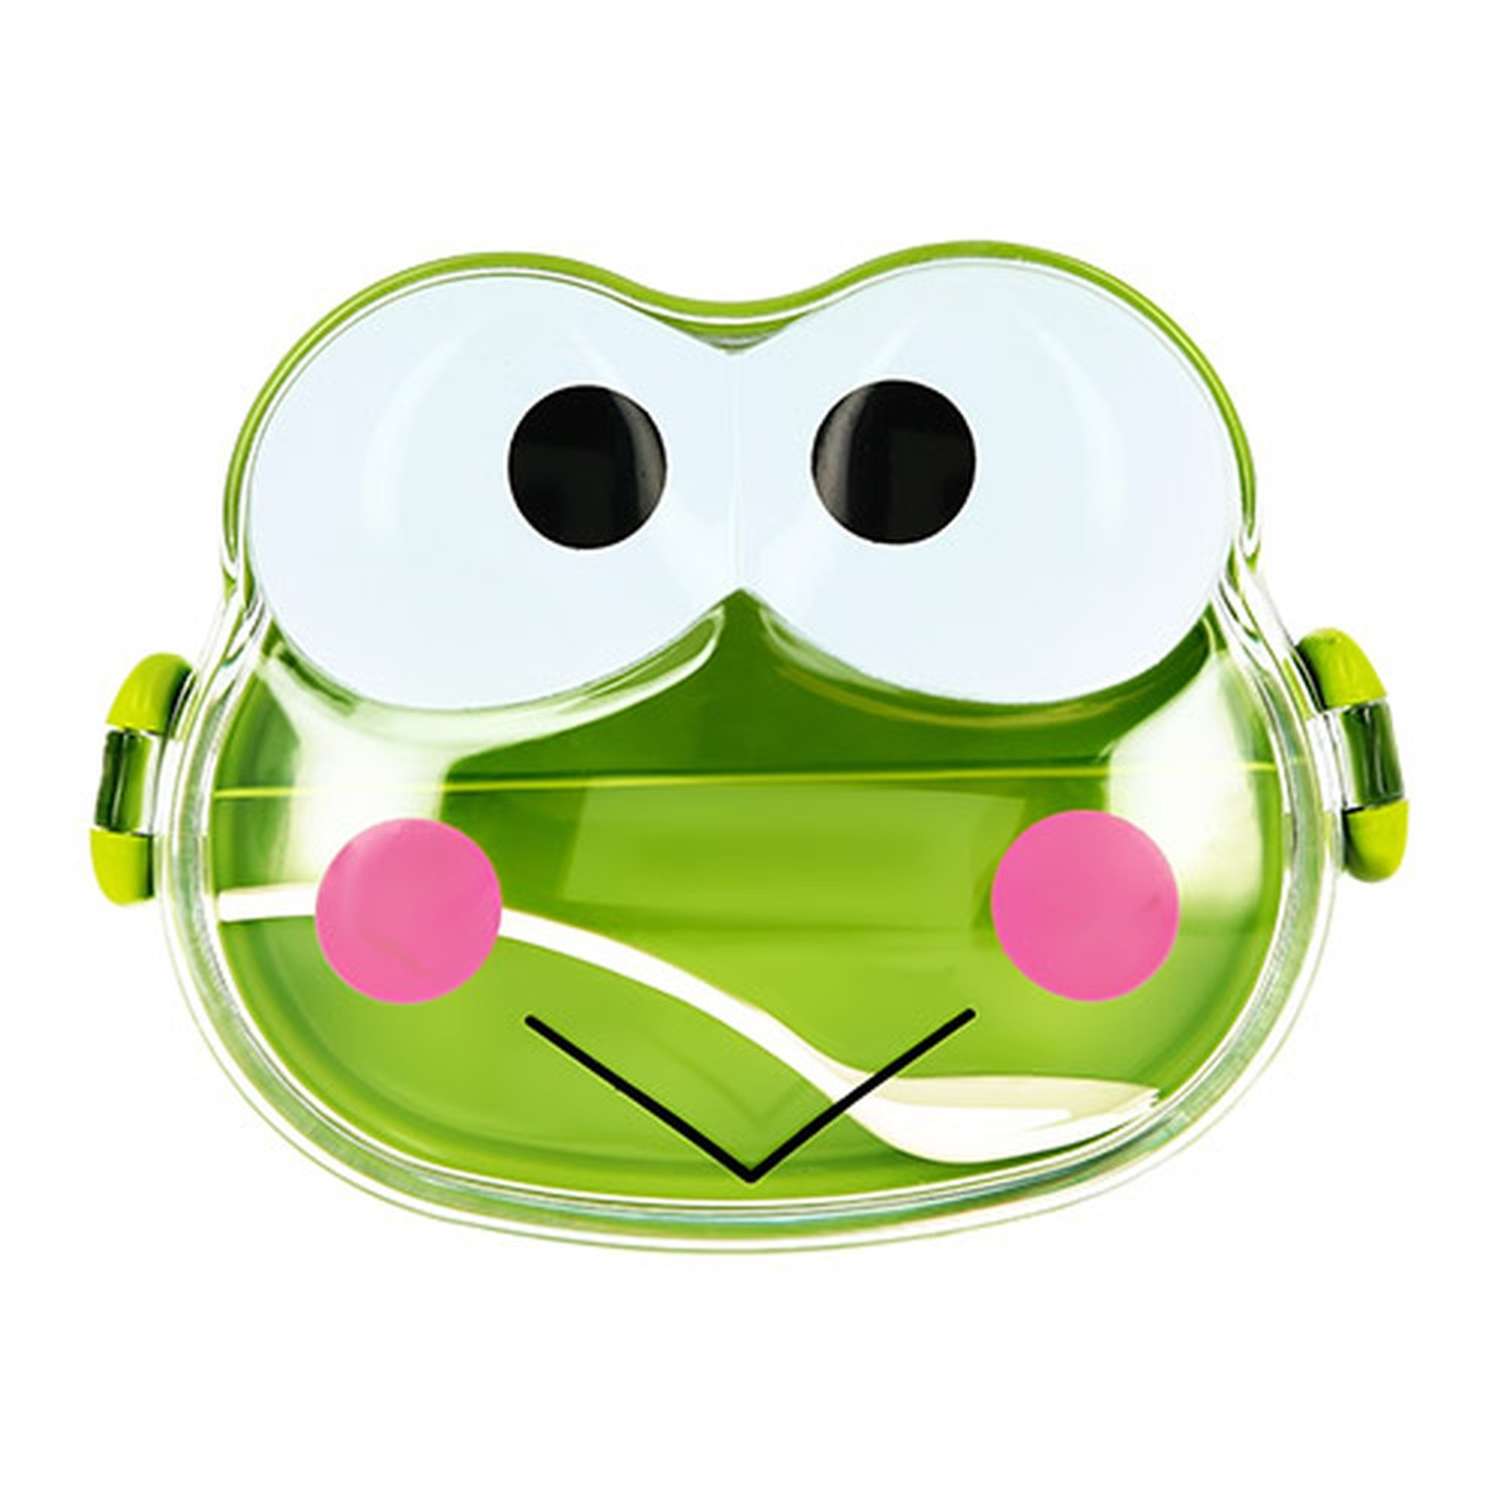 Ланч-бокс FUN frog green - фото 1